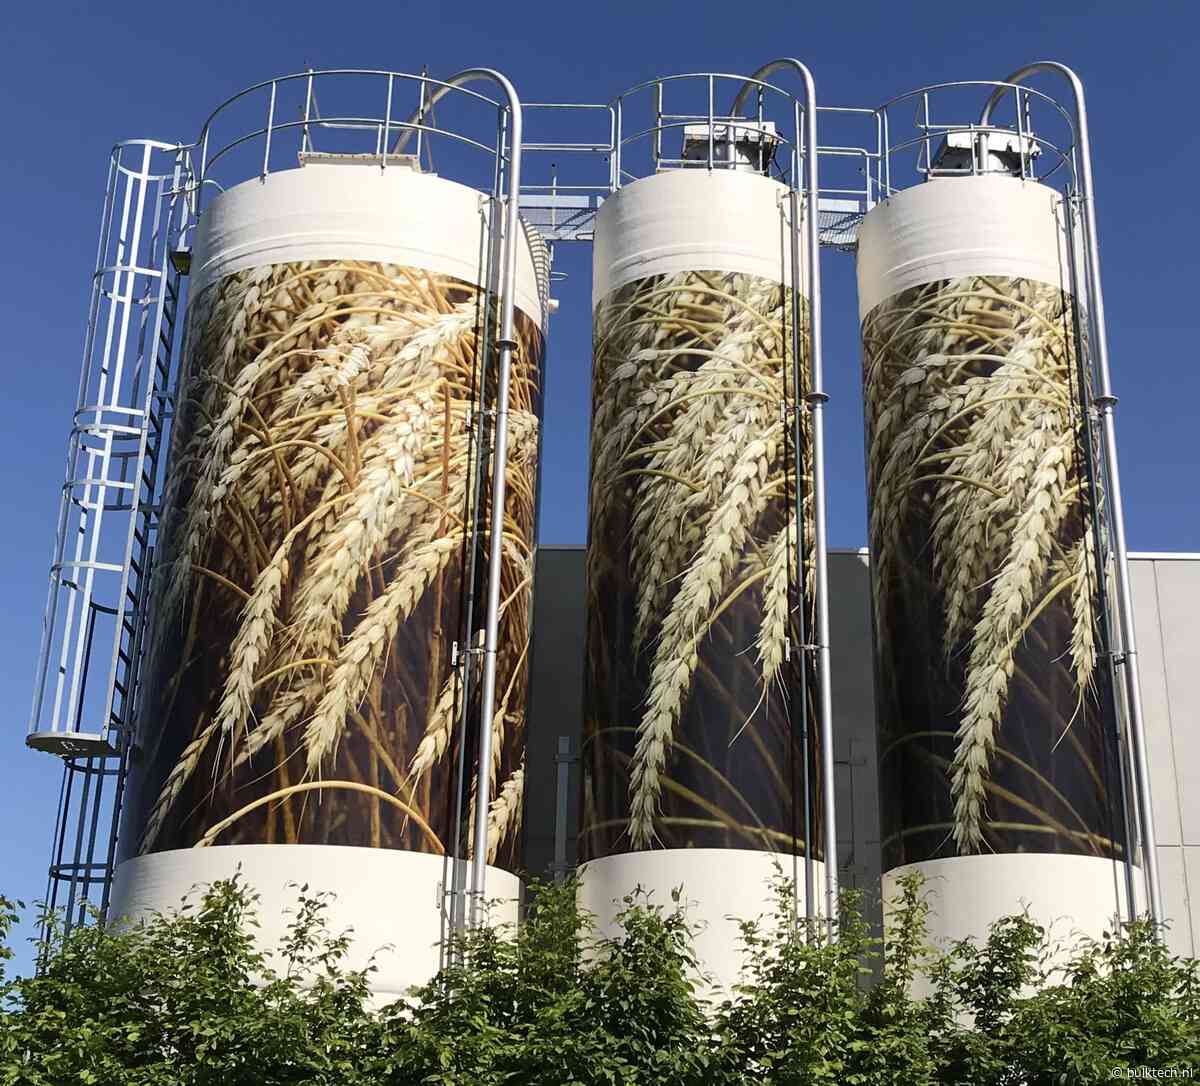 De voordelen van composiet silo’s en tanks in de voedingsmiddelenindustrie